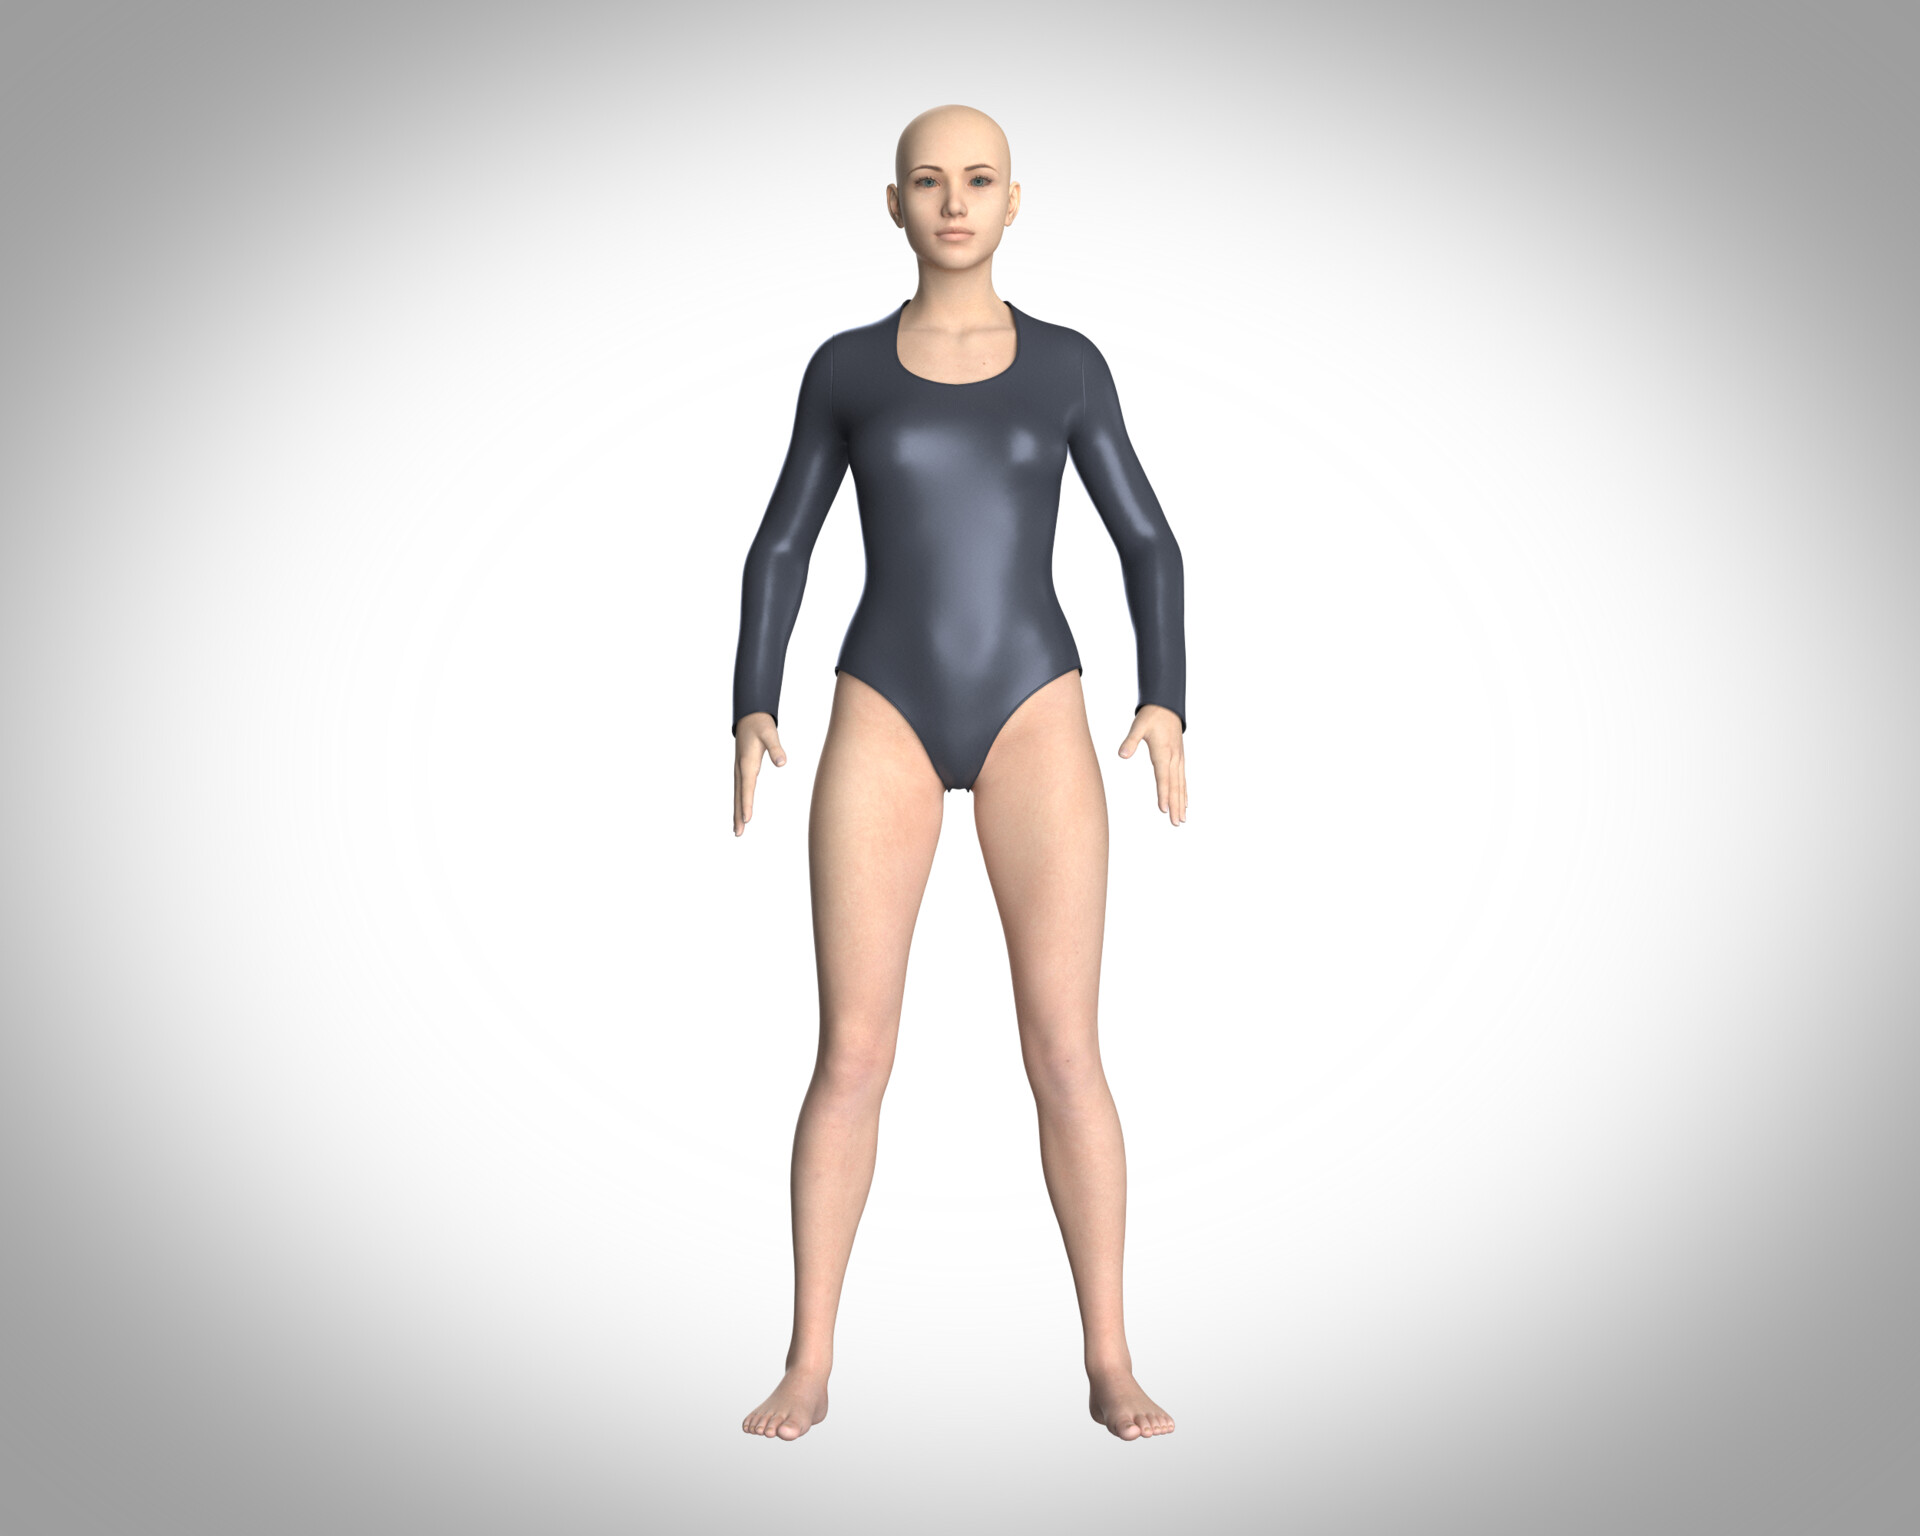 ArtStation - Ladies Bodysuit With Genesis 8